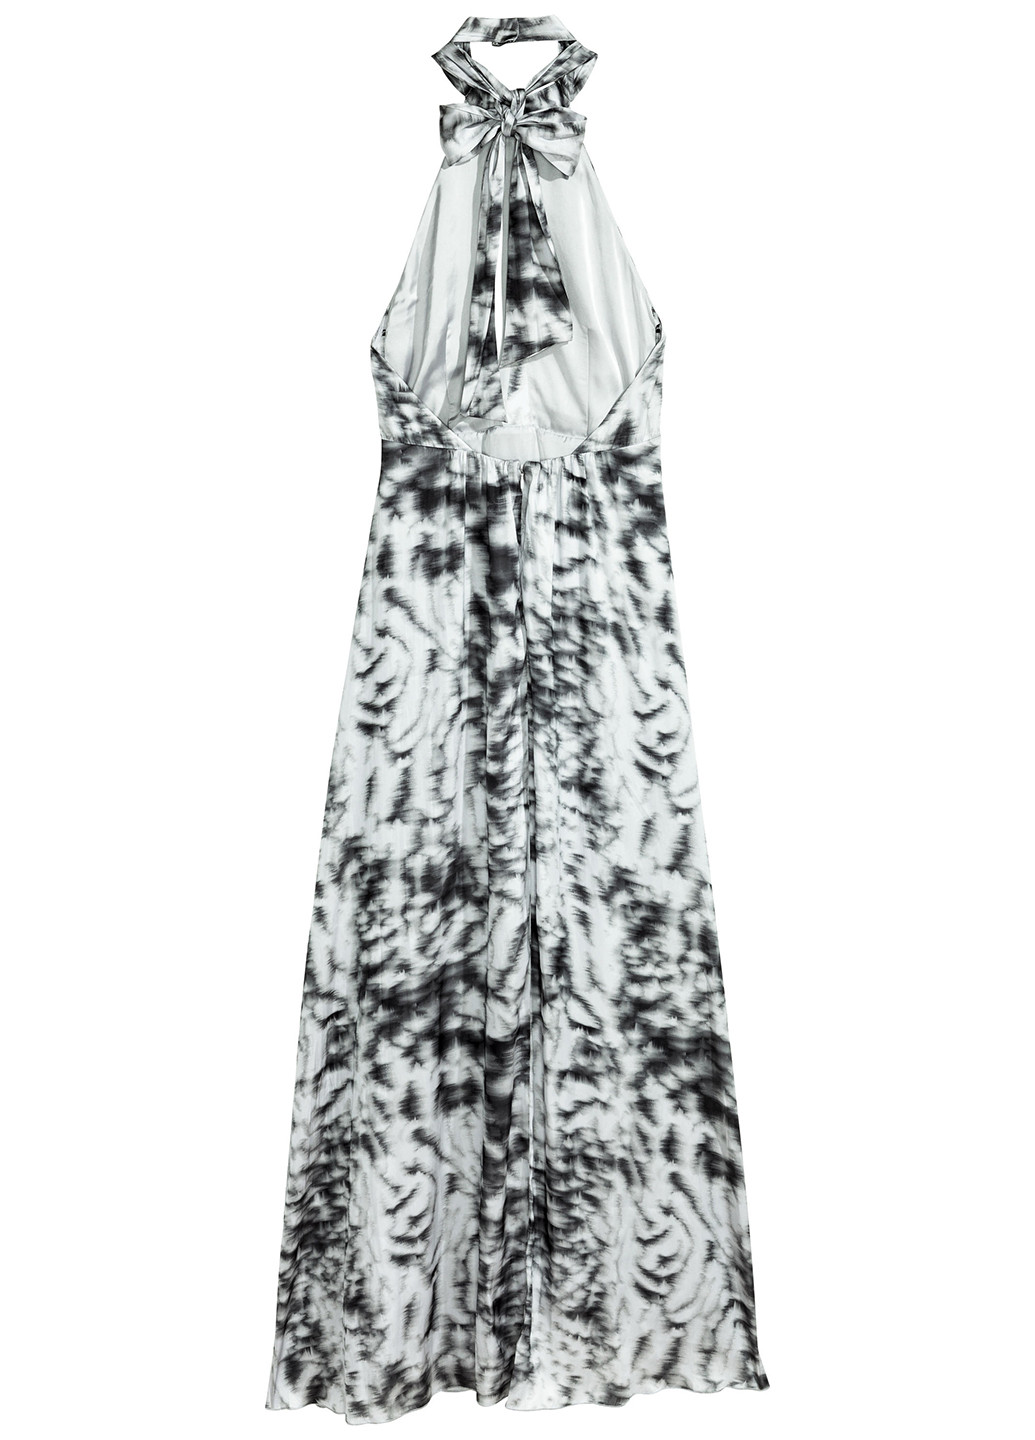 Летний женский сарафан H&M с абстрактным узором